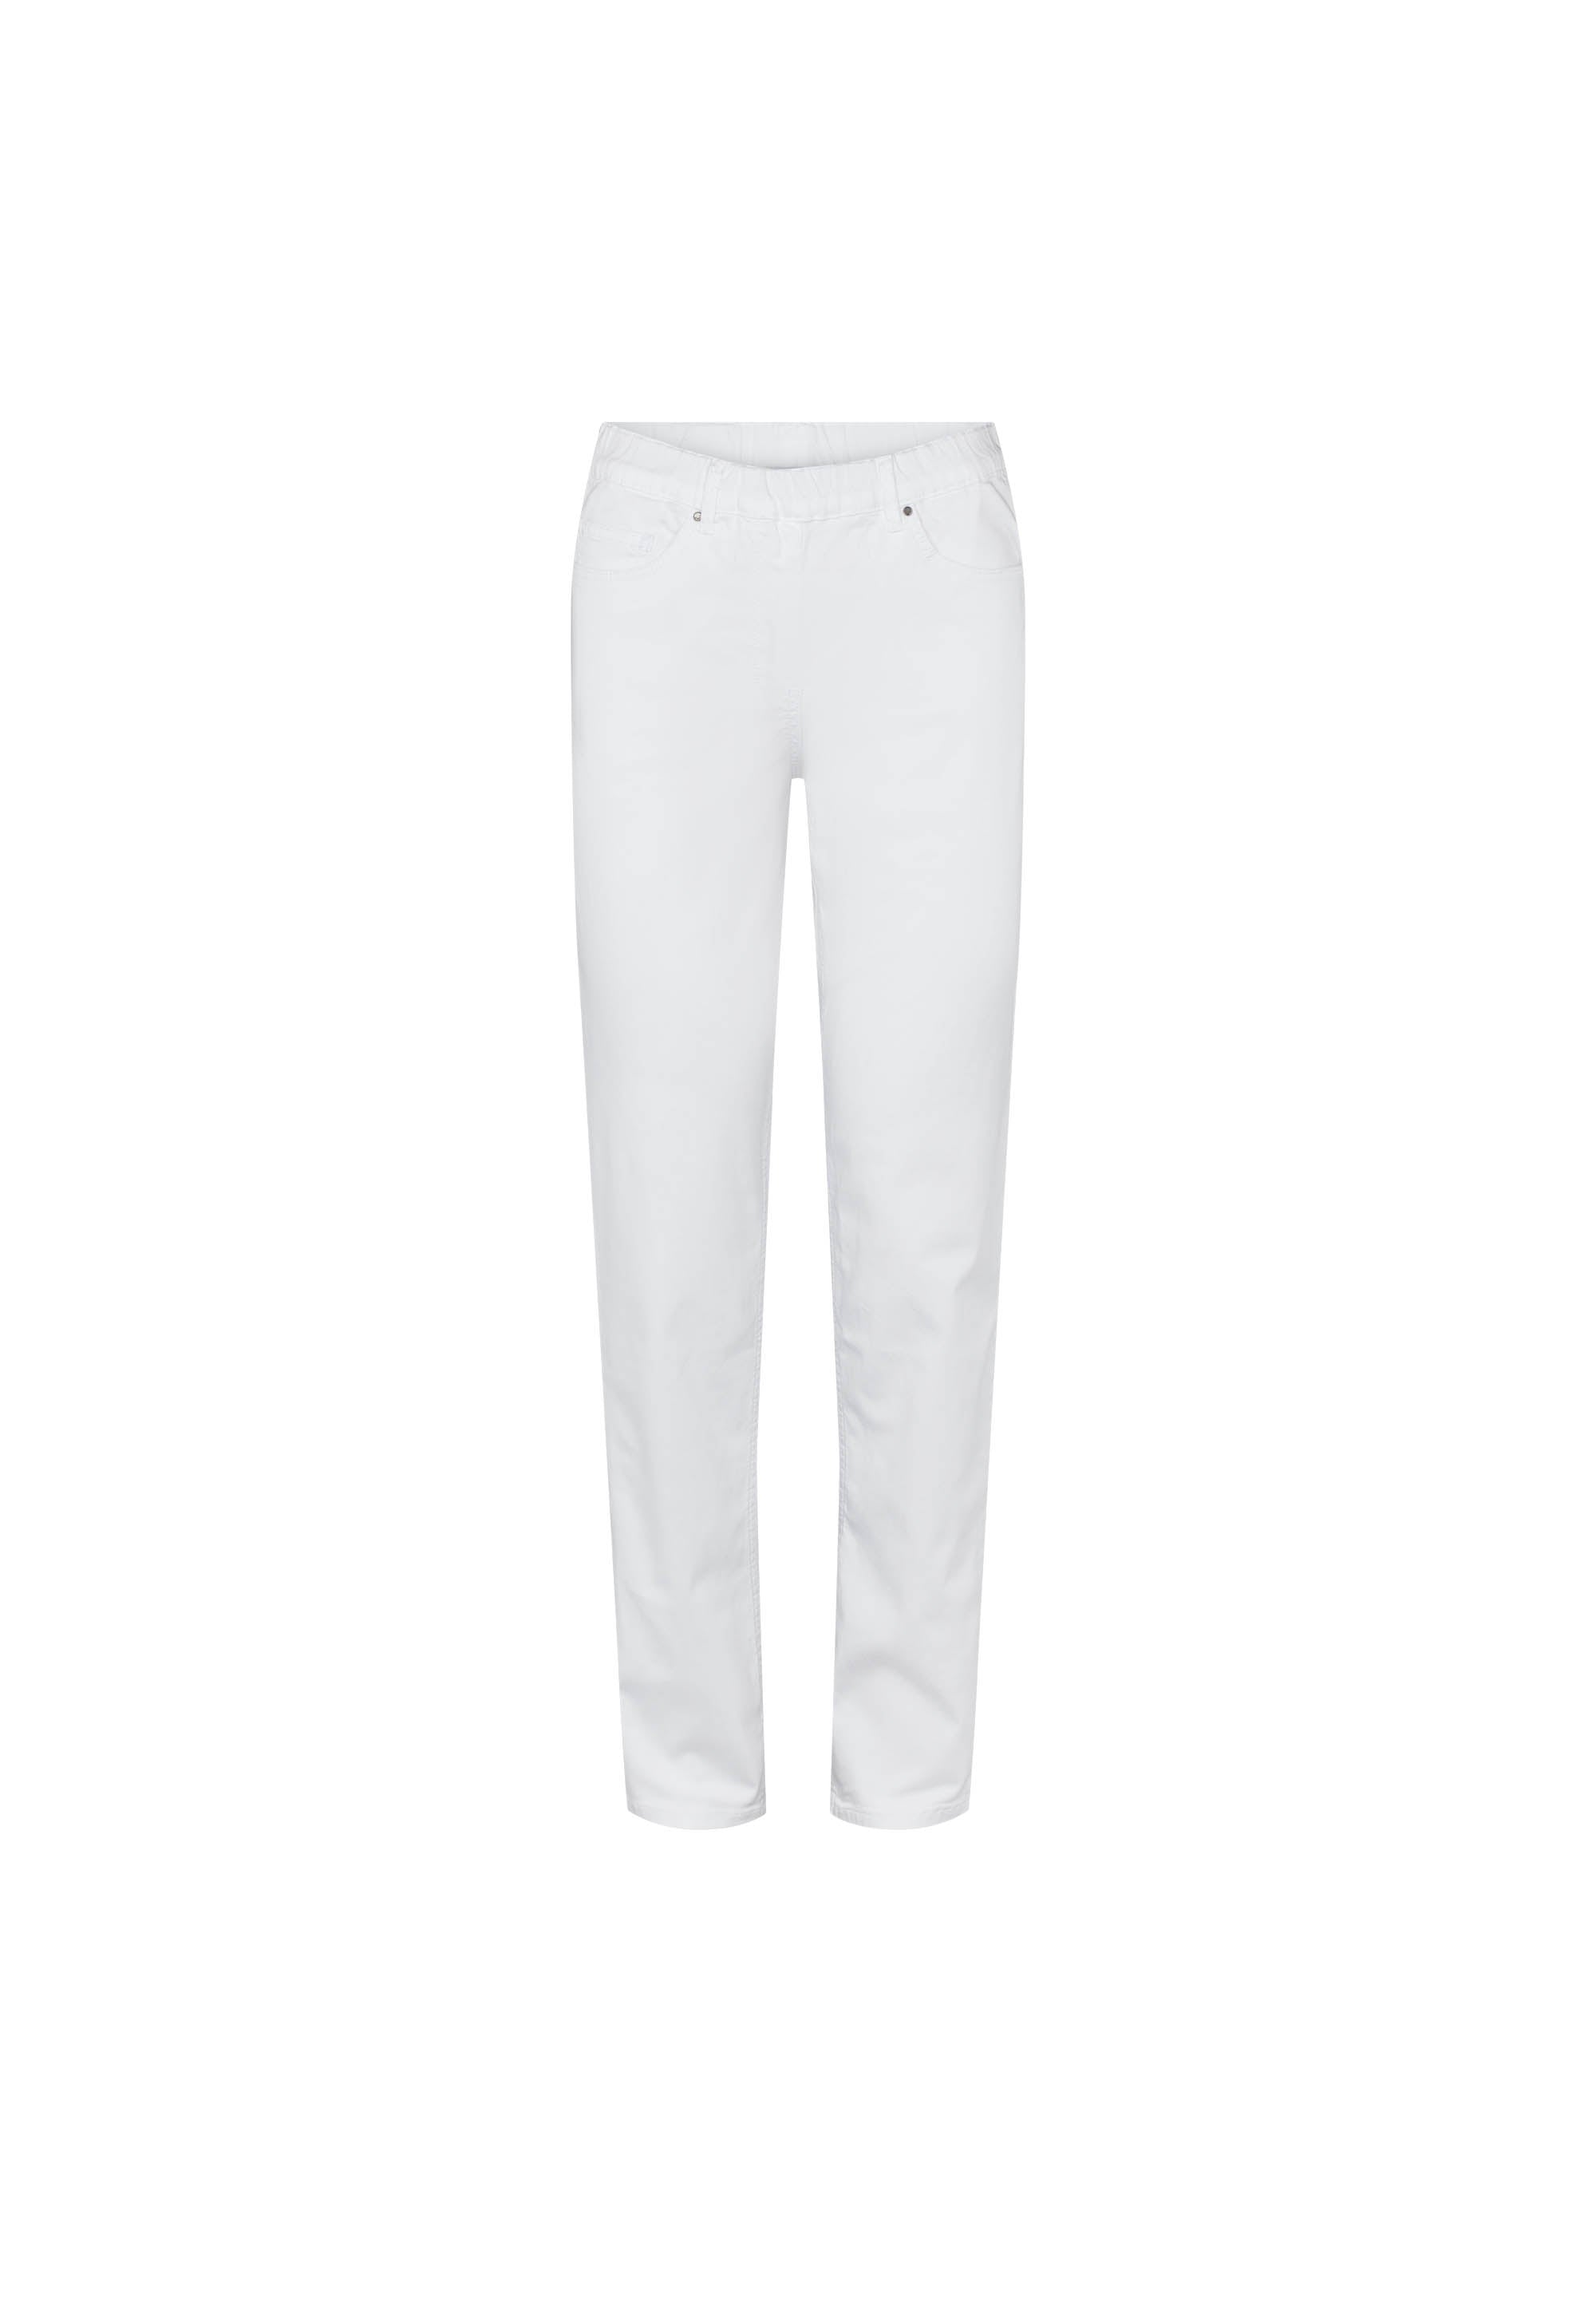 LAURIE Hannah Regular - Medium Length Trousers REGULAR 10122 White